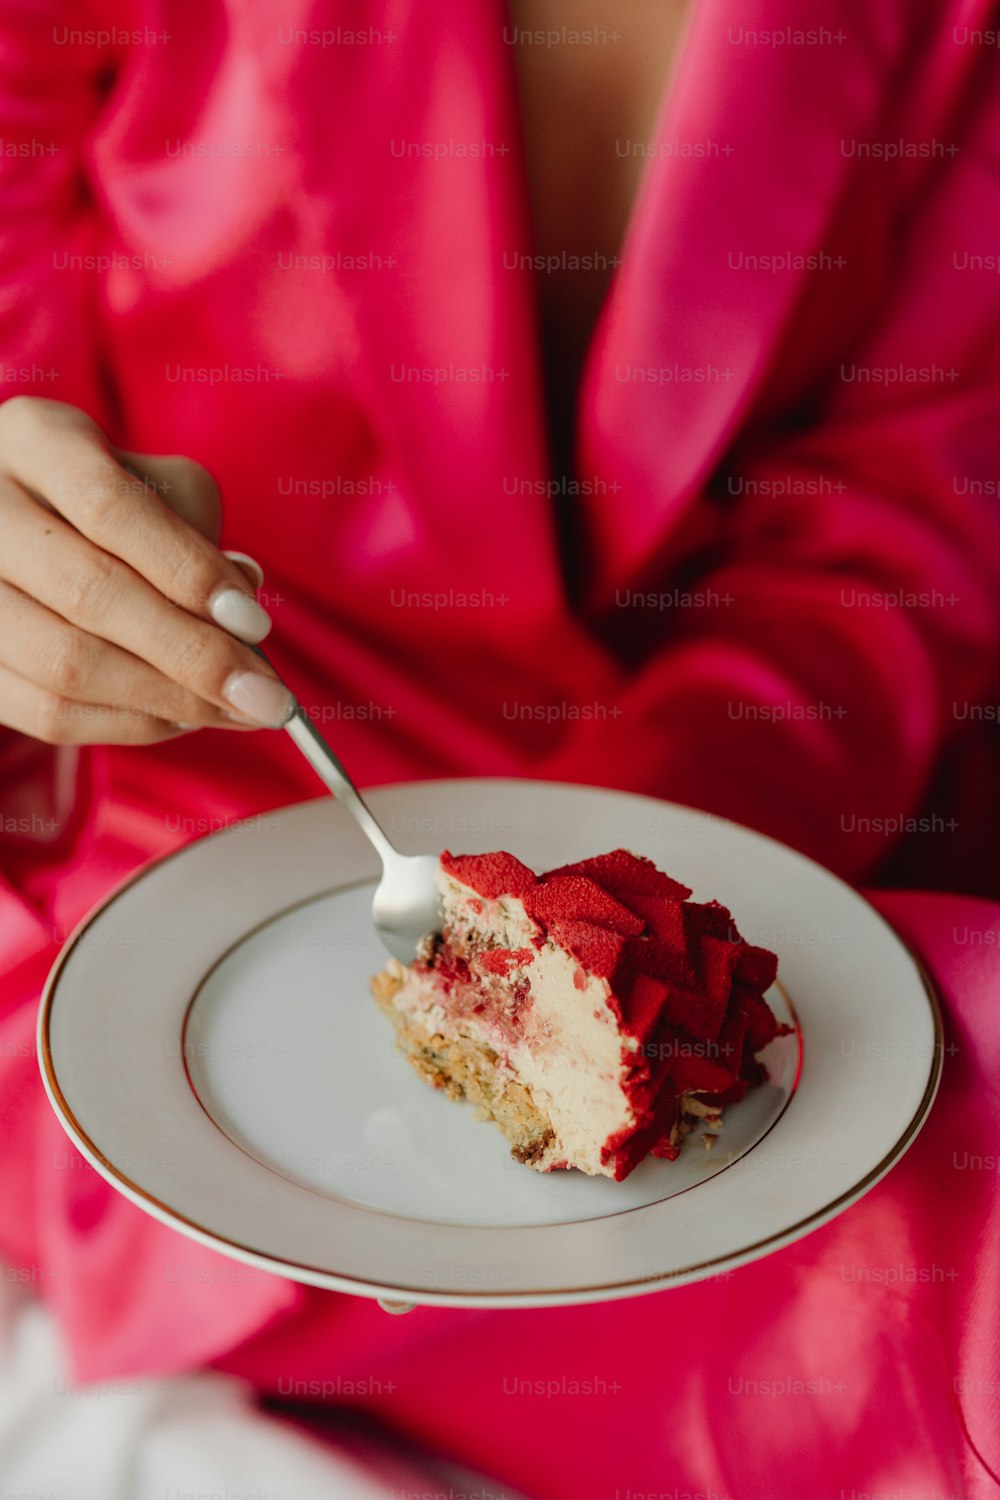 Una mujer con un vestido rosa comiendo un pedazo de pastel